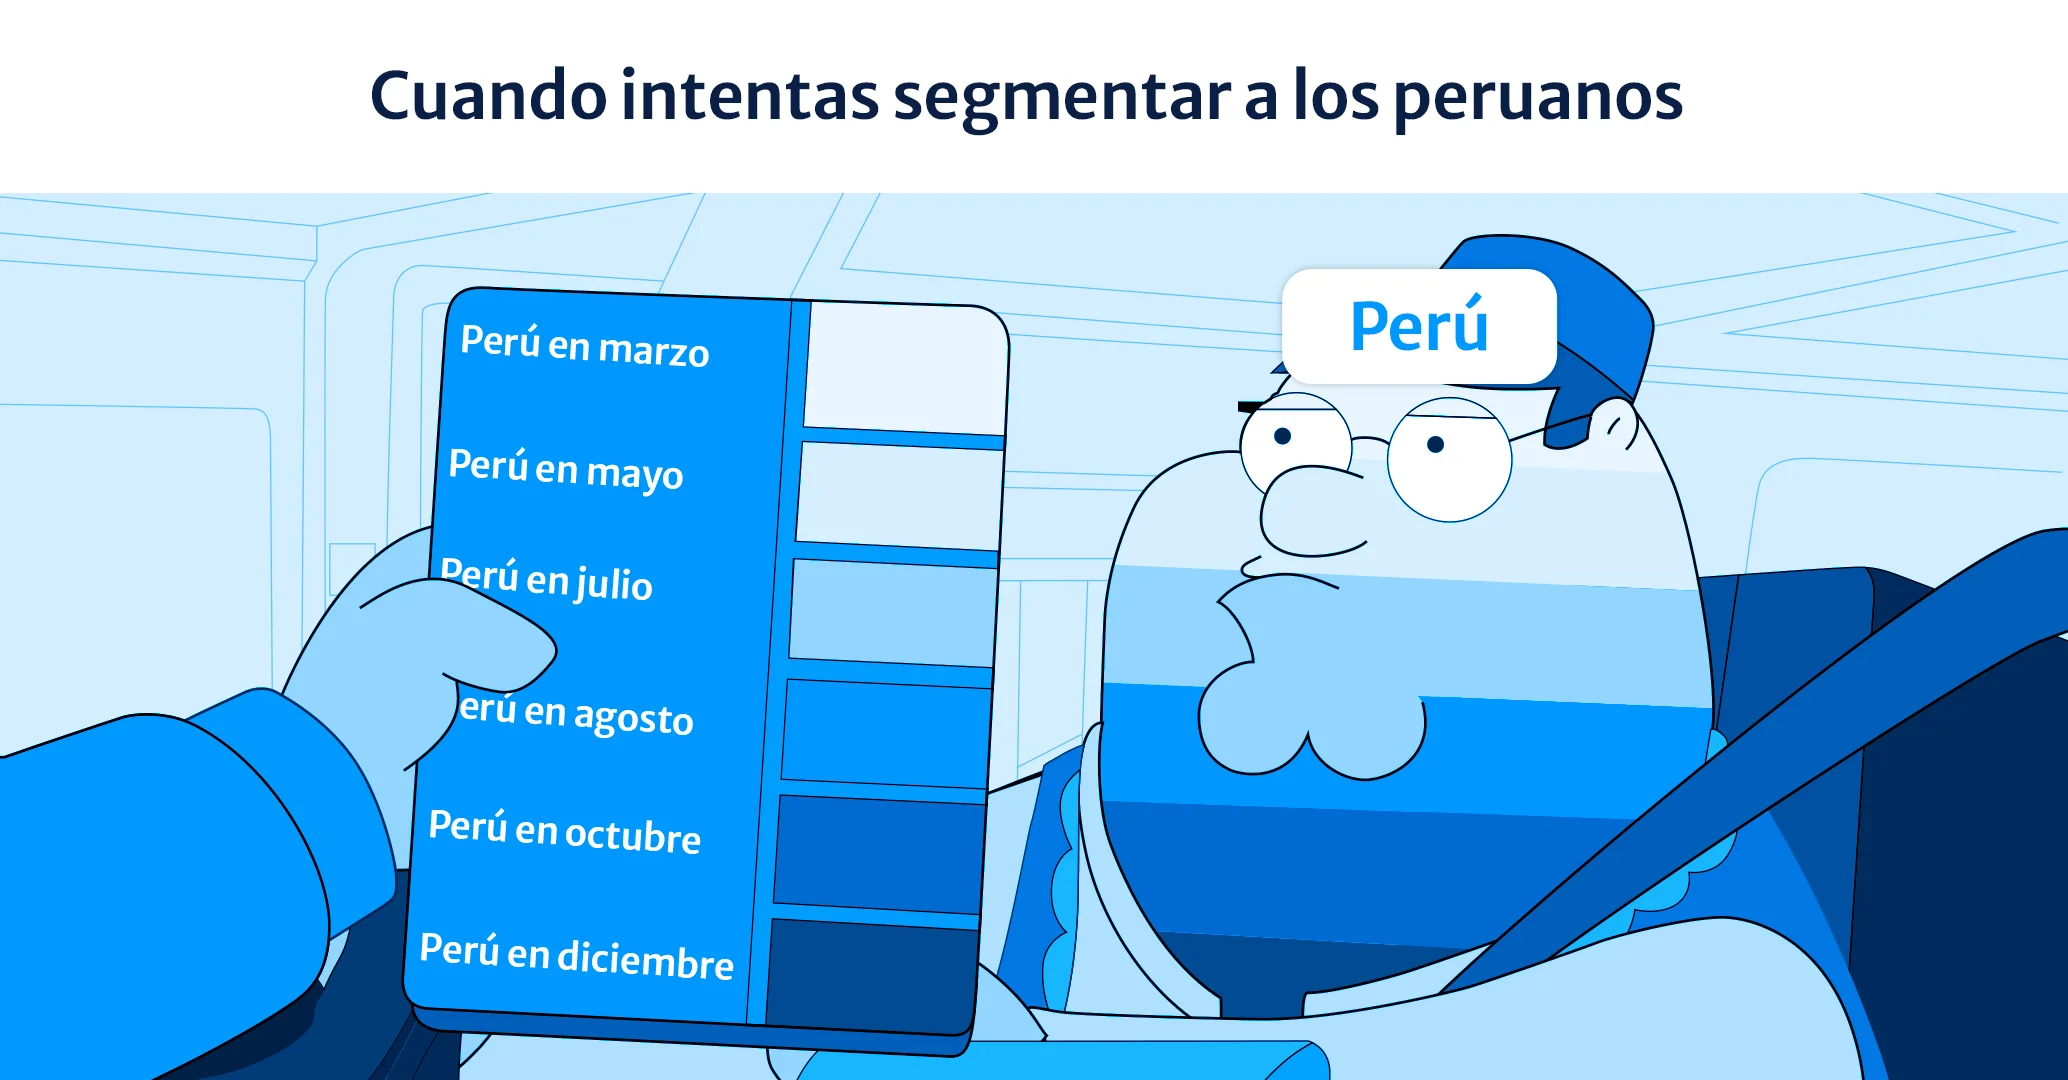 Todo lo que necesitas saber sobre segmentación en Perú